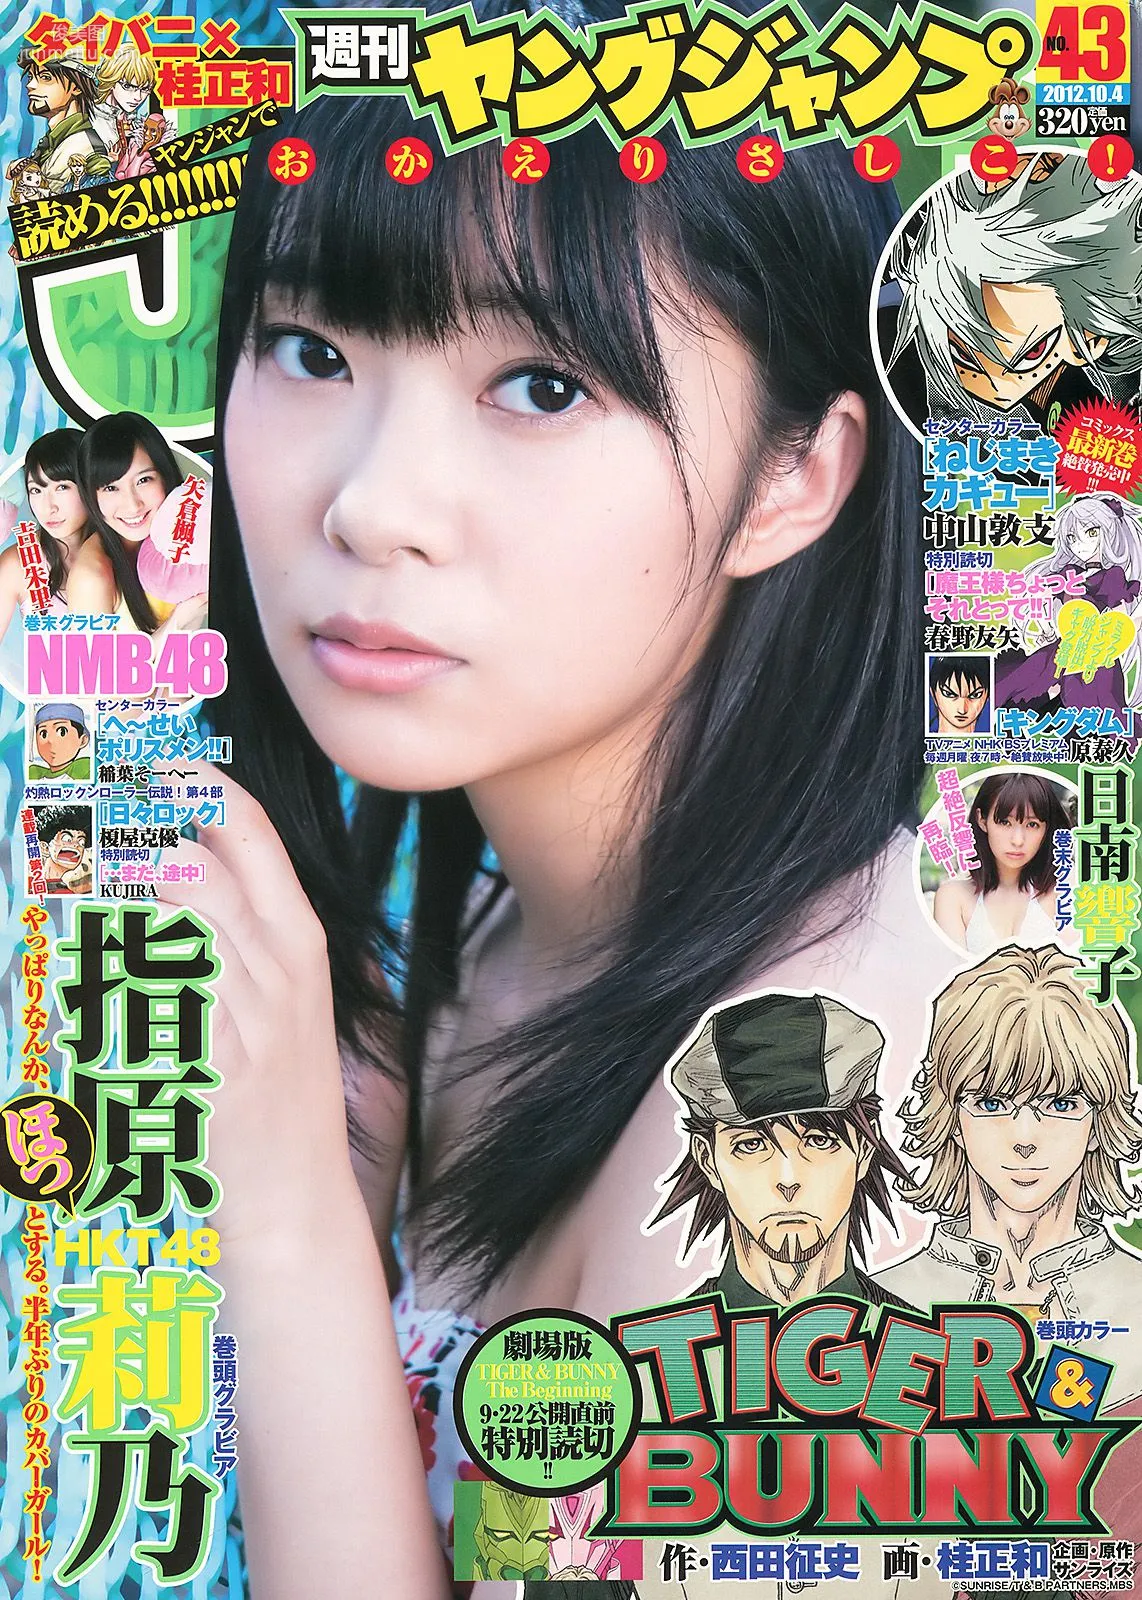 指原莉乃 NMB48(吉田朱里・矢倉楓子) 日南響子 [Weekly Young Jump] 2012年No.43 写真杂志1